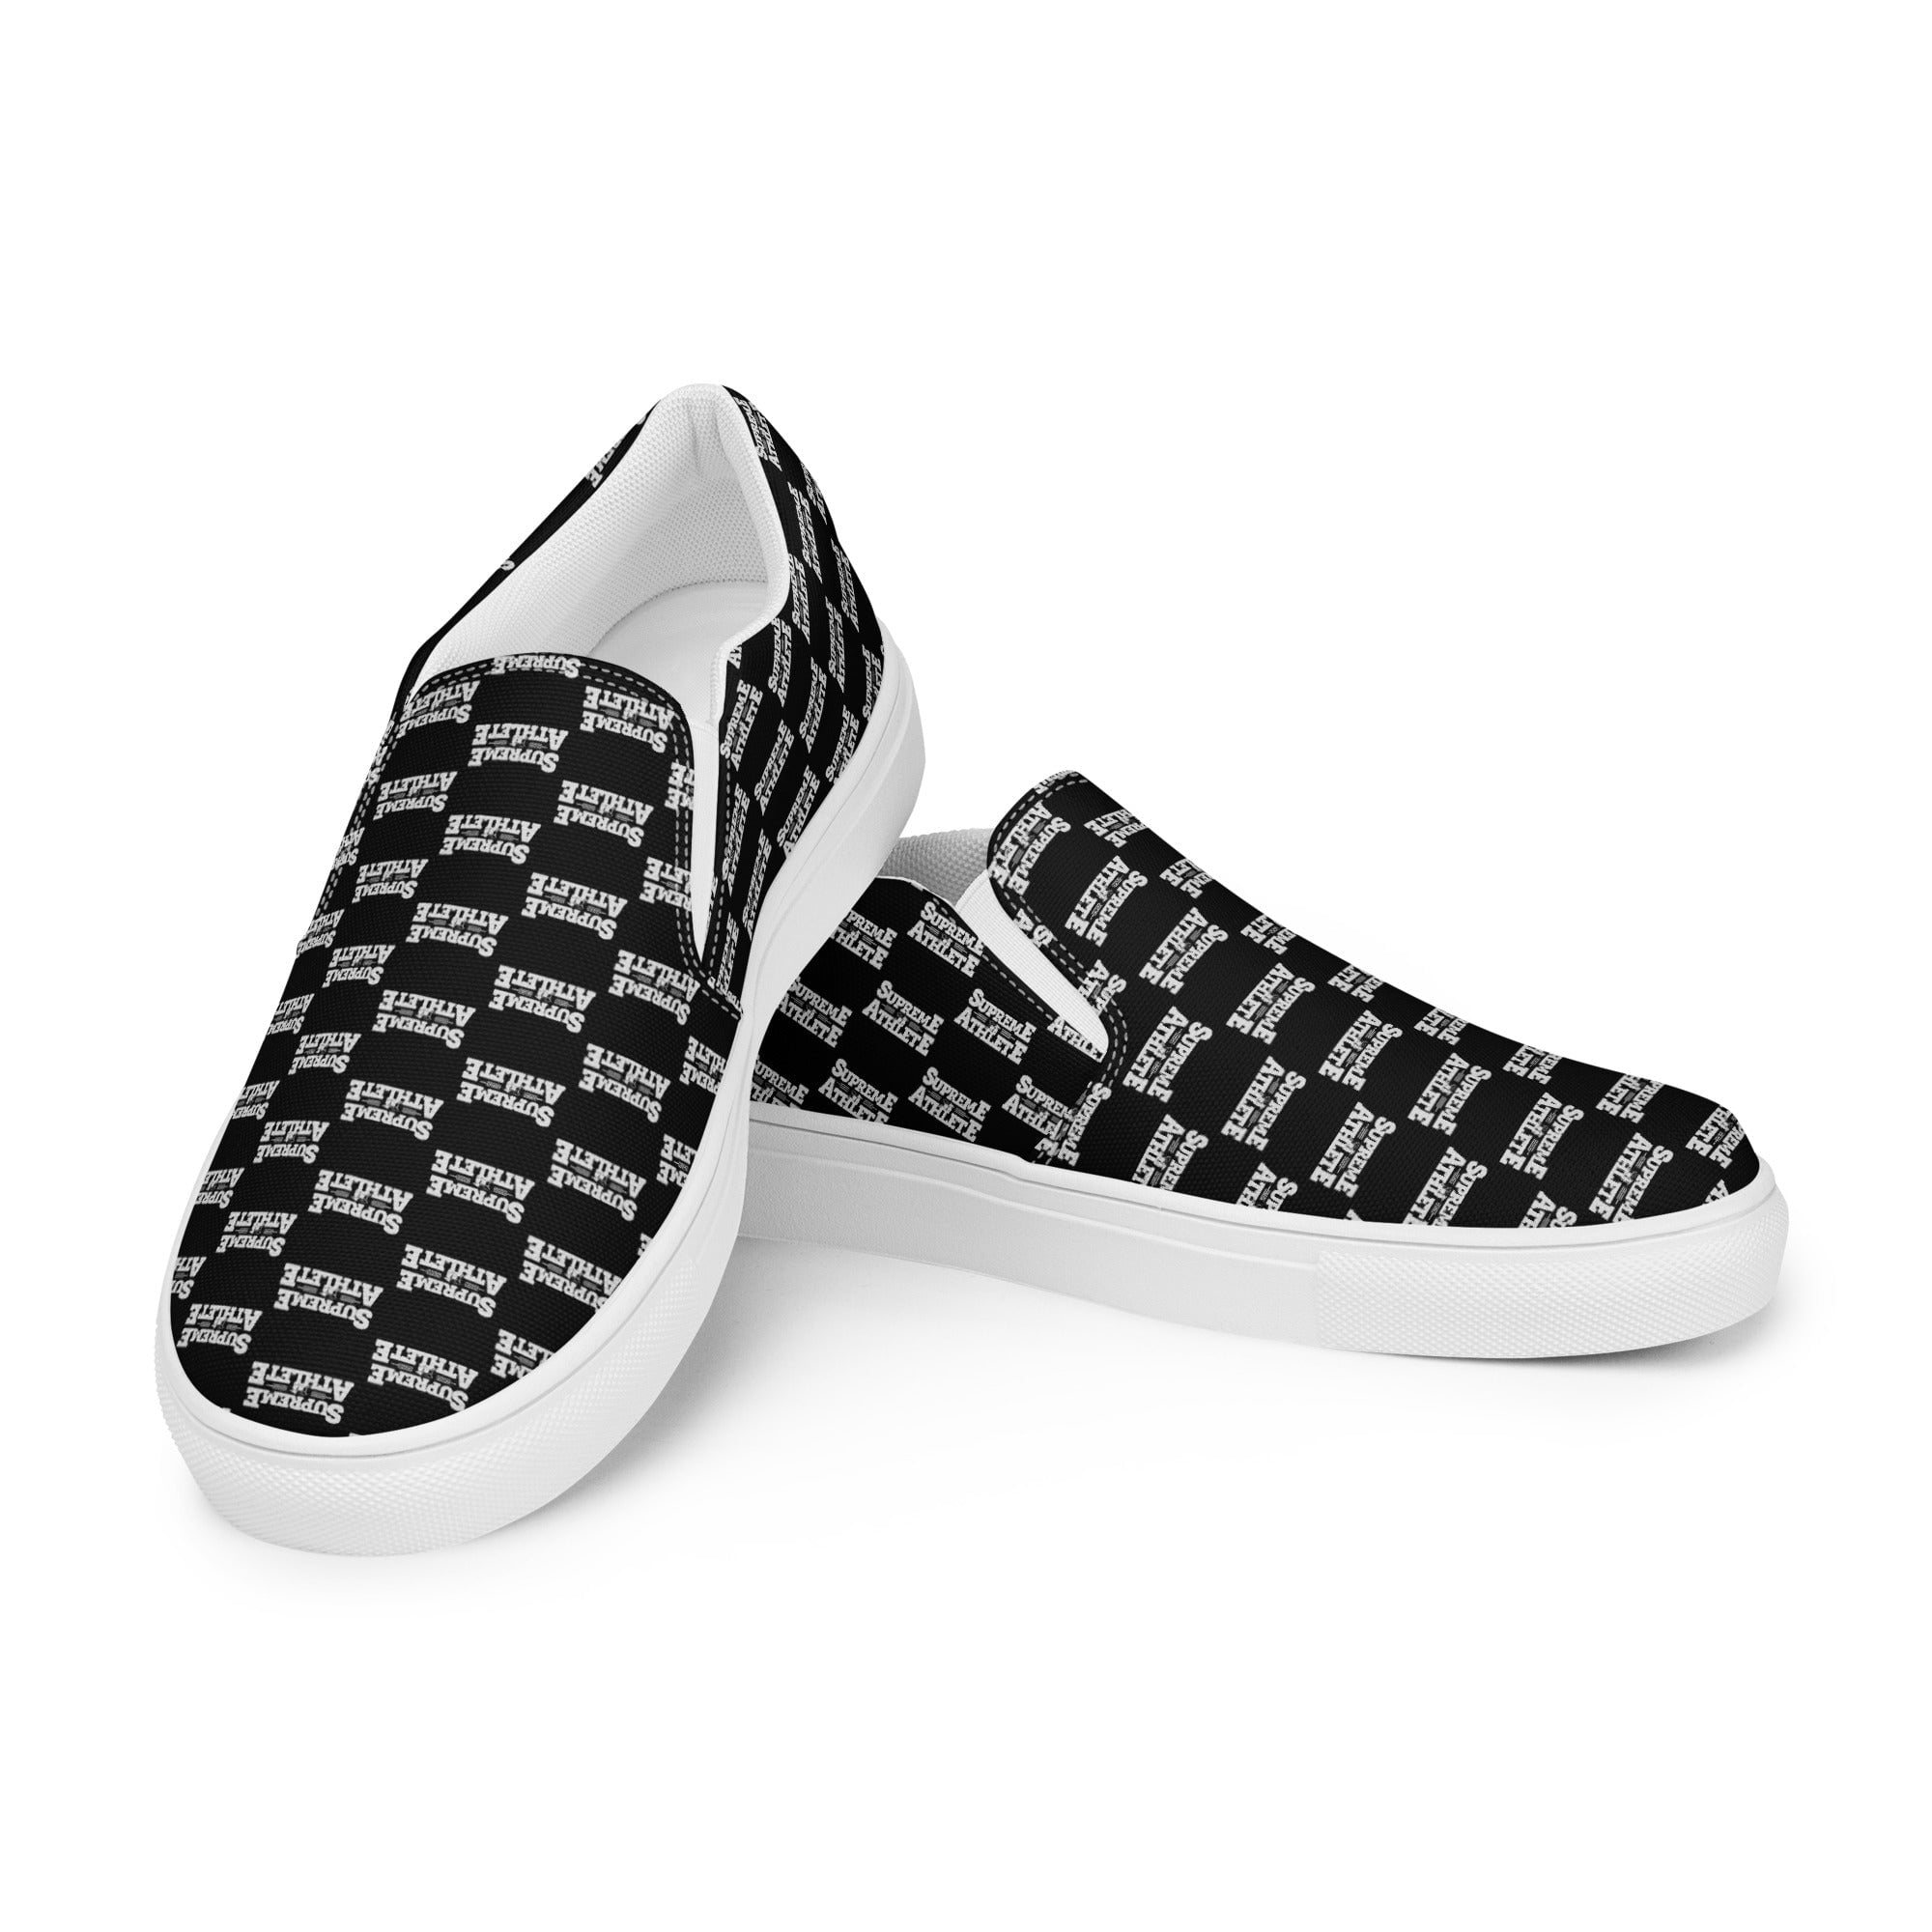 Reebok Shaq Attaq Brick City Tin Grey Red Black Men's Sneakers M40173 Sz  9.5 | eBay